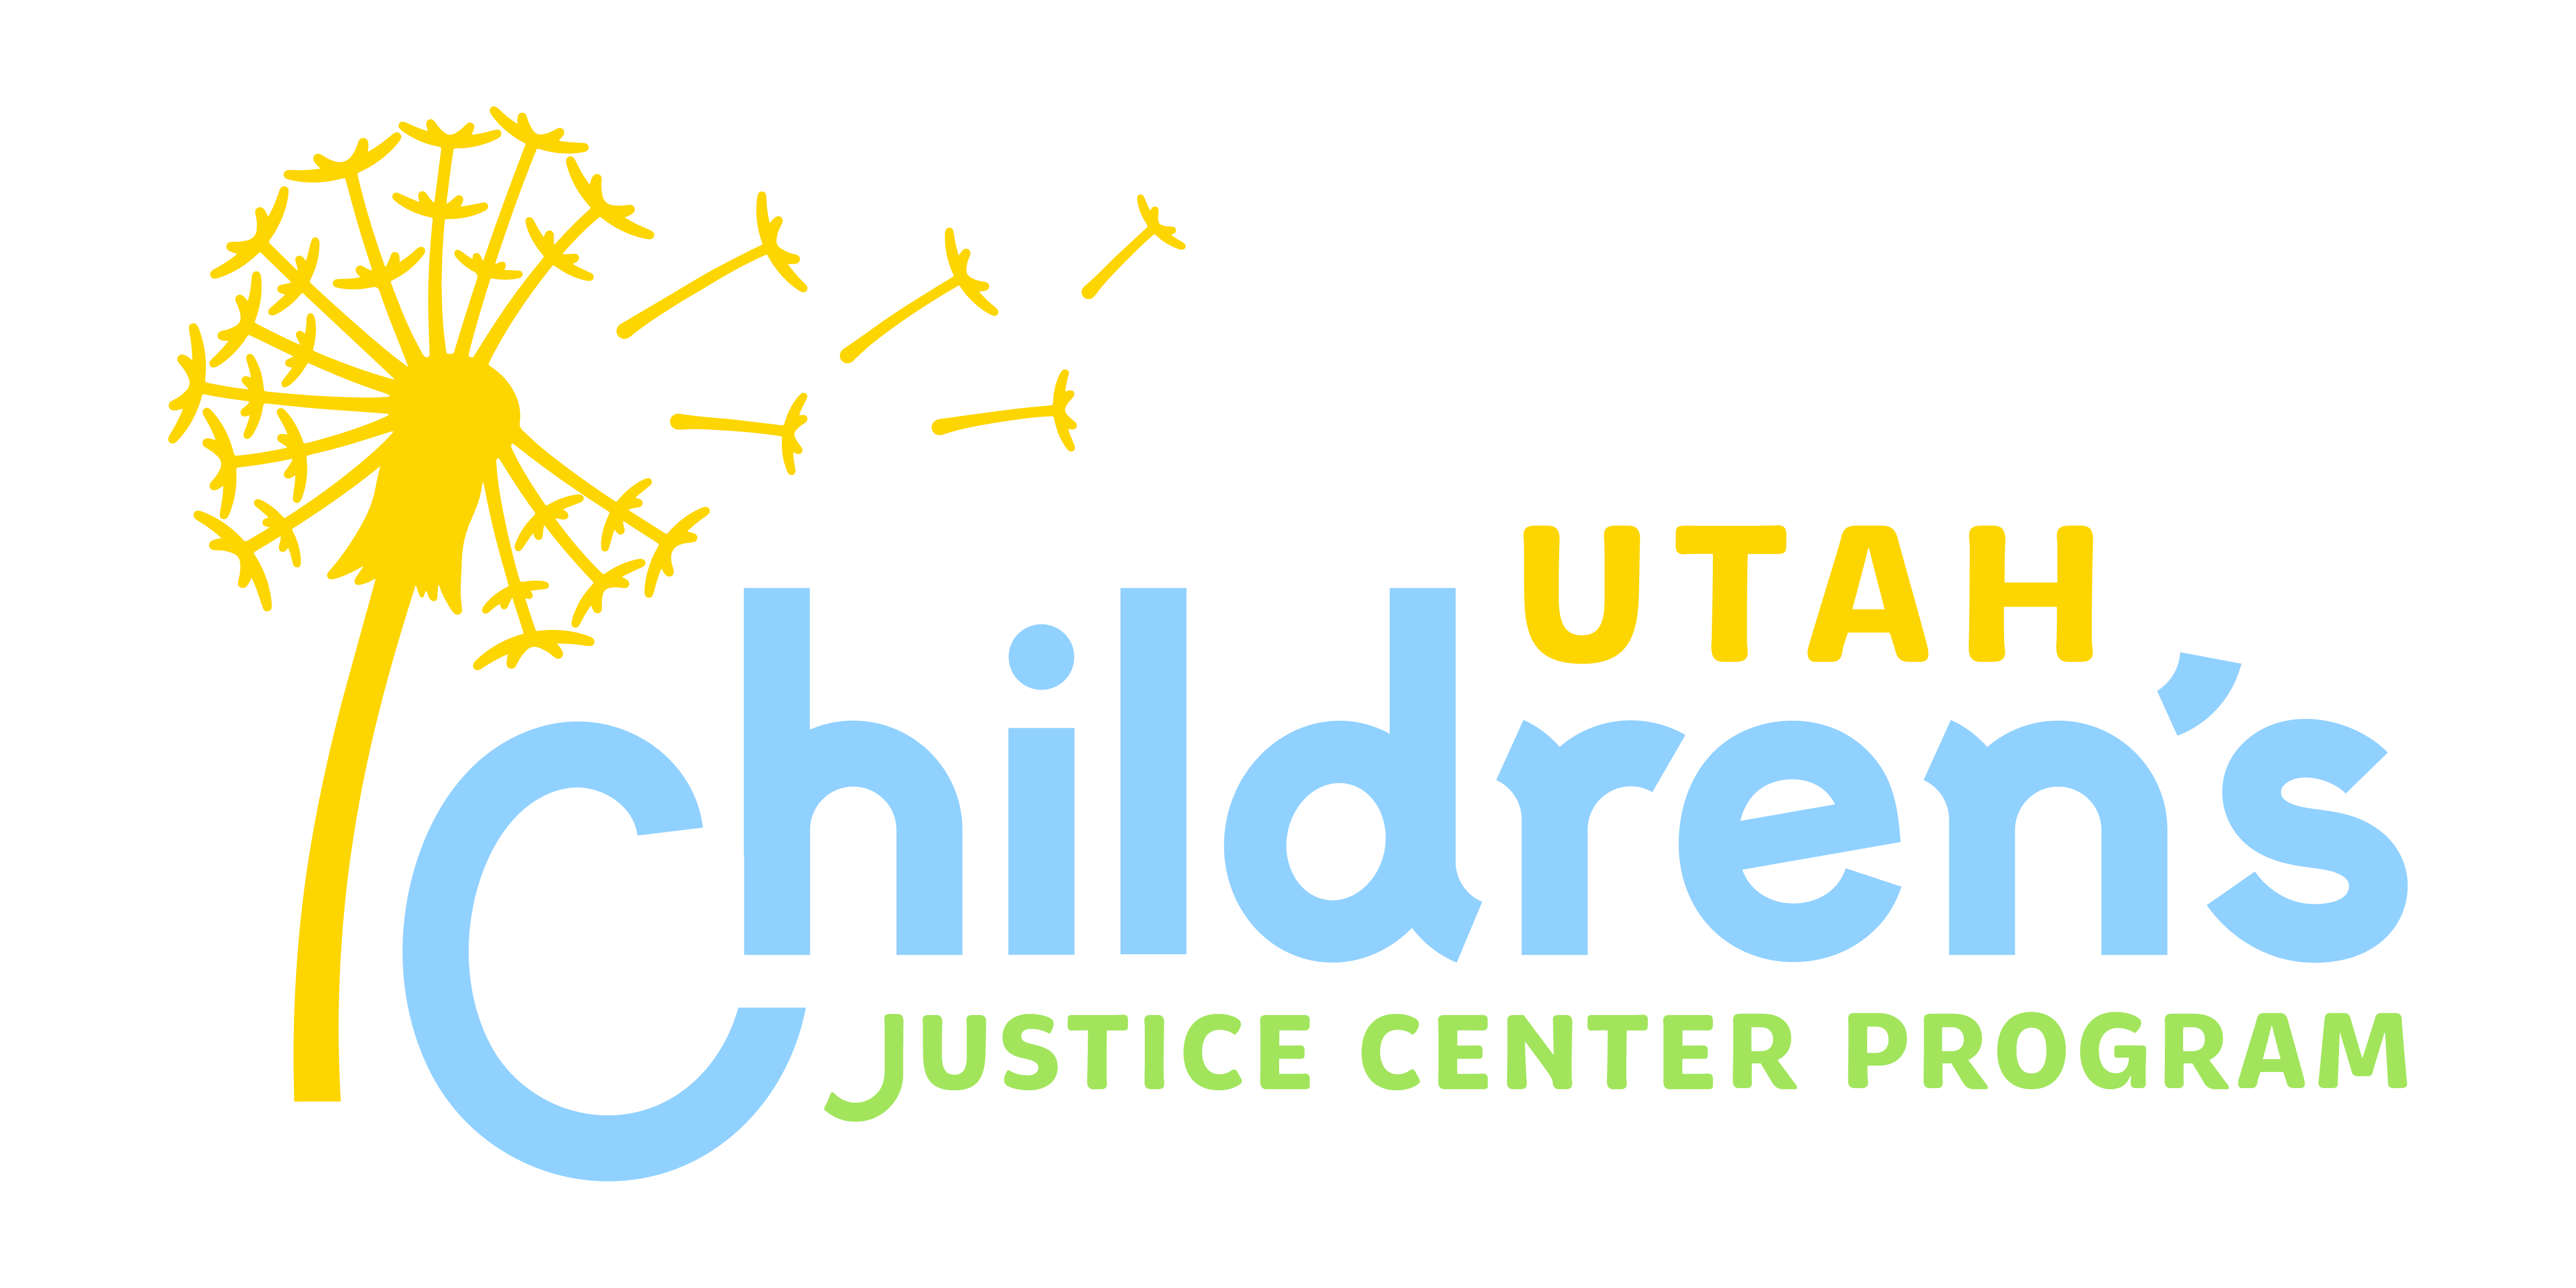 Utah Children's Justice Centers